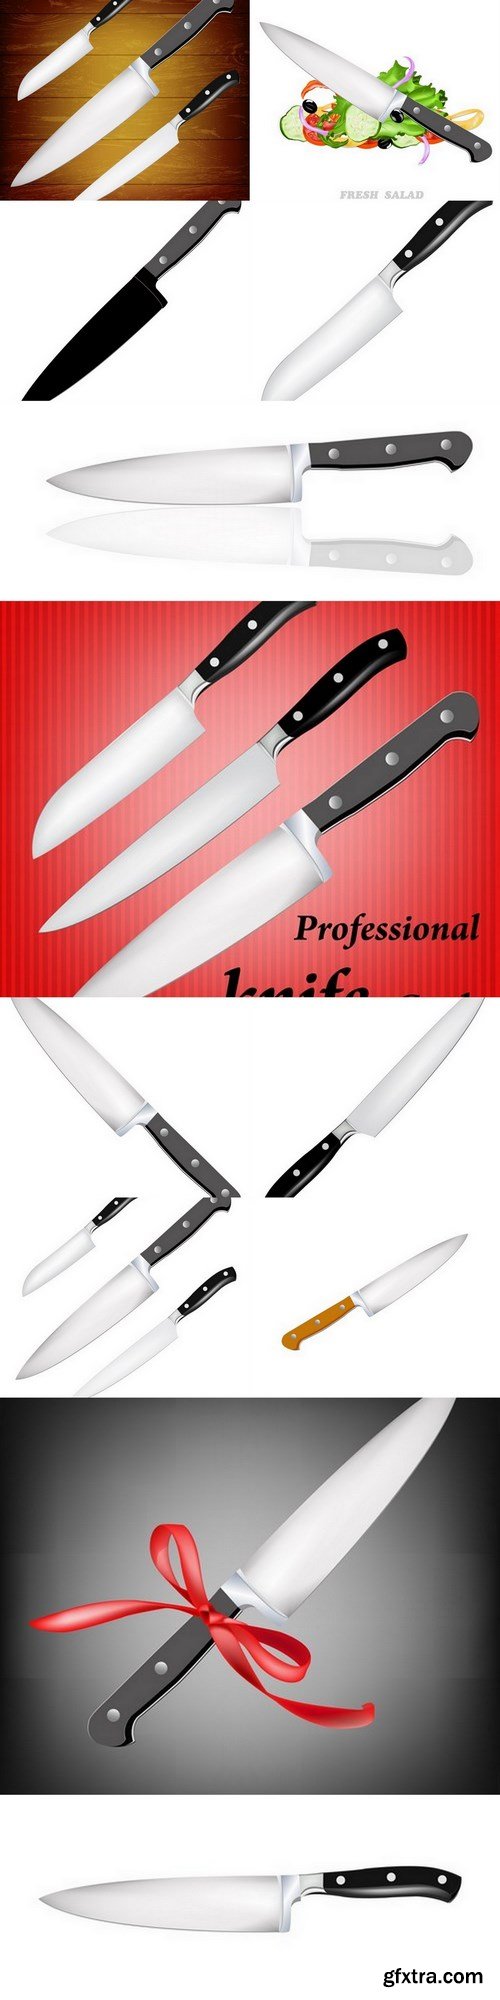 Knife - 12 EPS Vector Stock